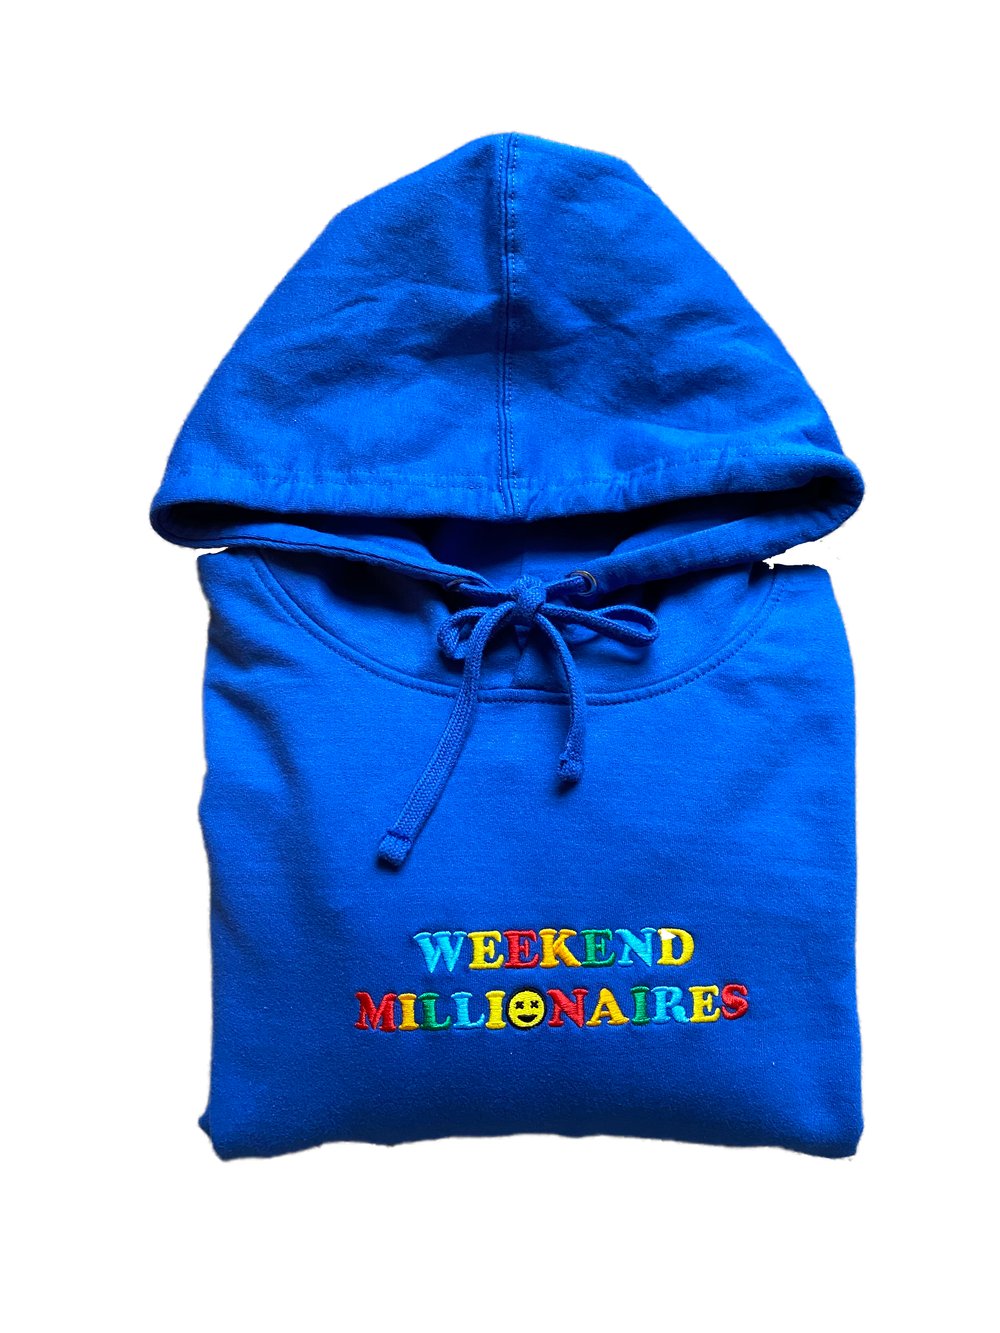 Unisex Weekender Hoodie in Royal Blue – Dirty Weekend